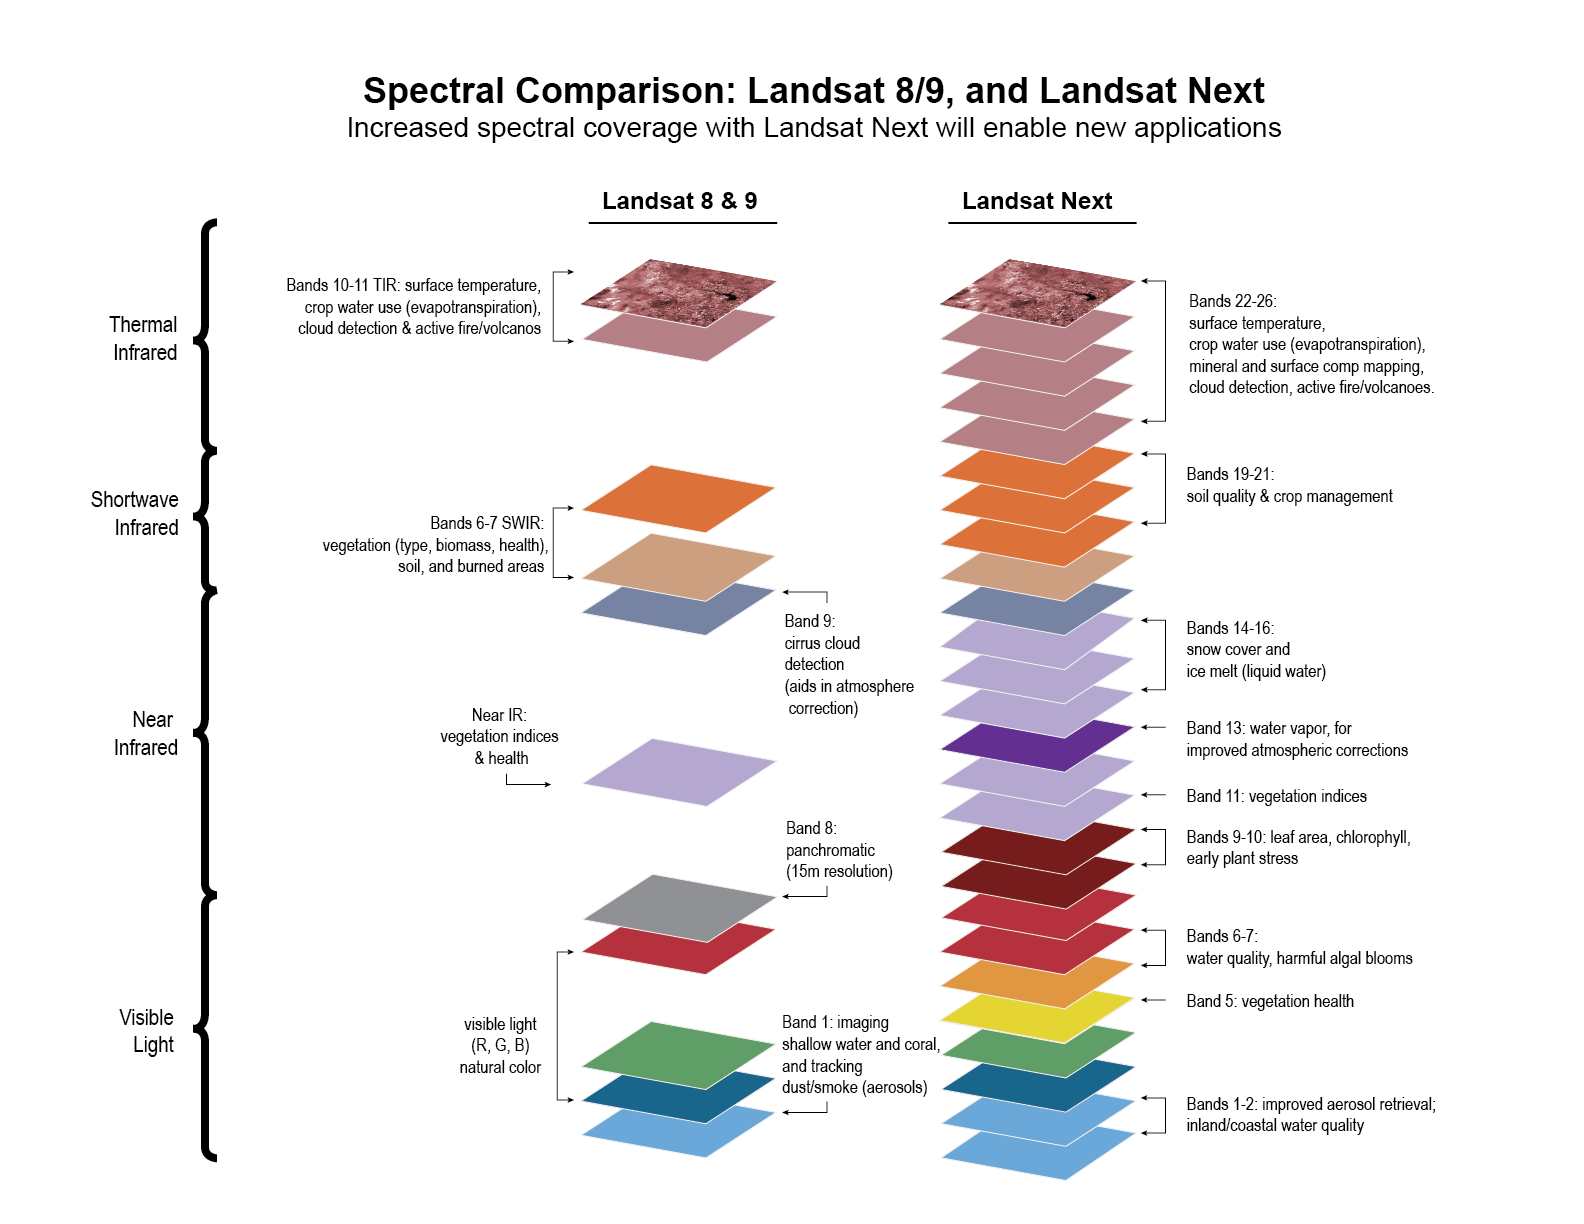 Comparison of Landsat 8/9 and Landsat NEXT spectral bands.